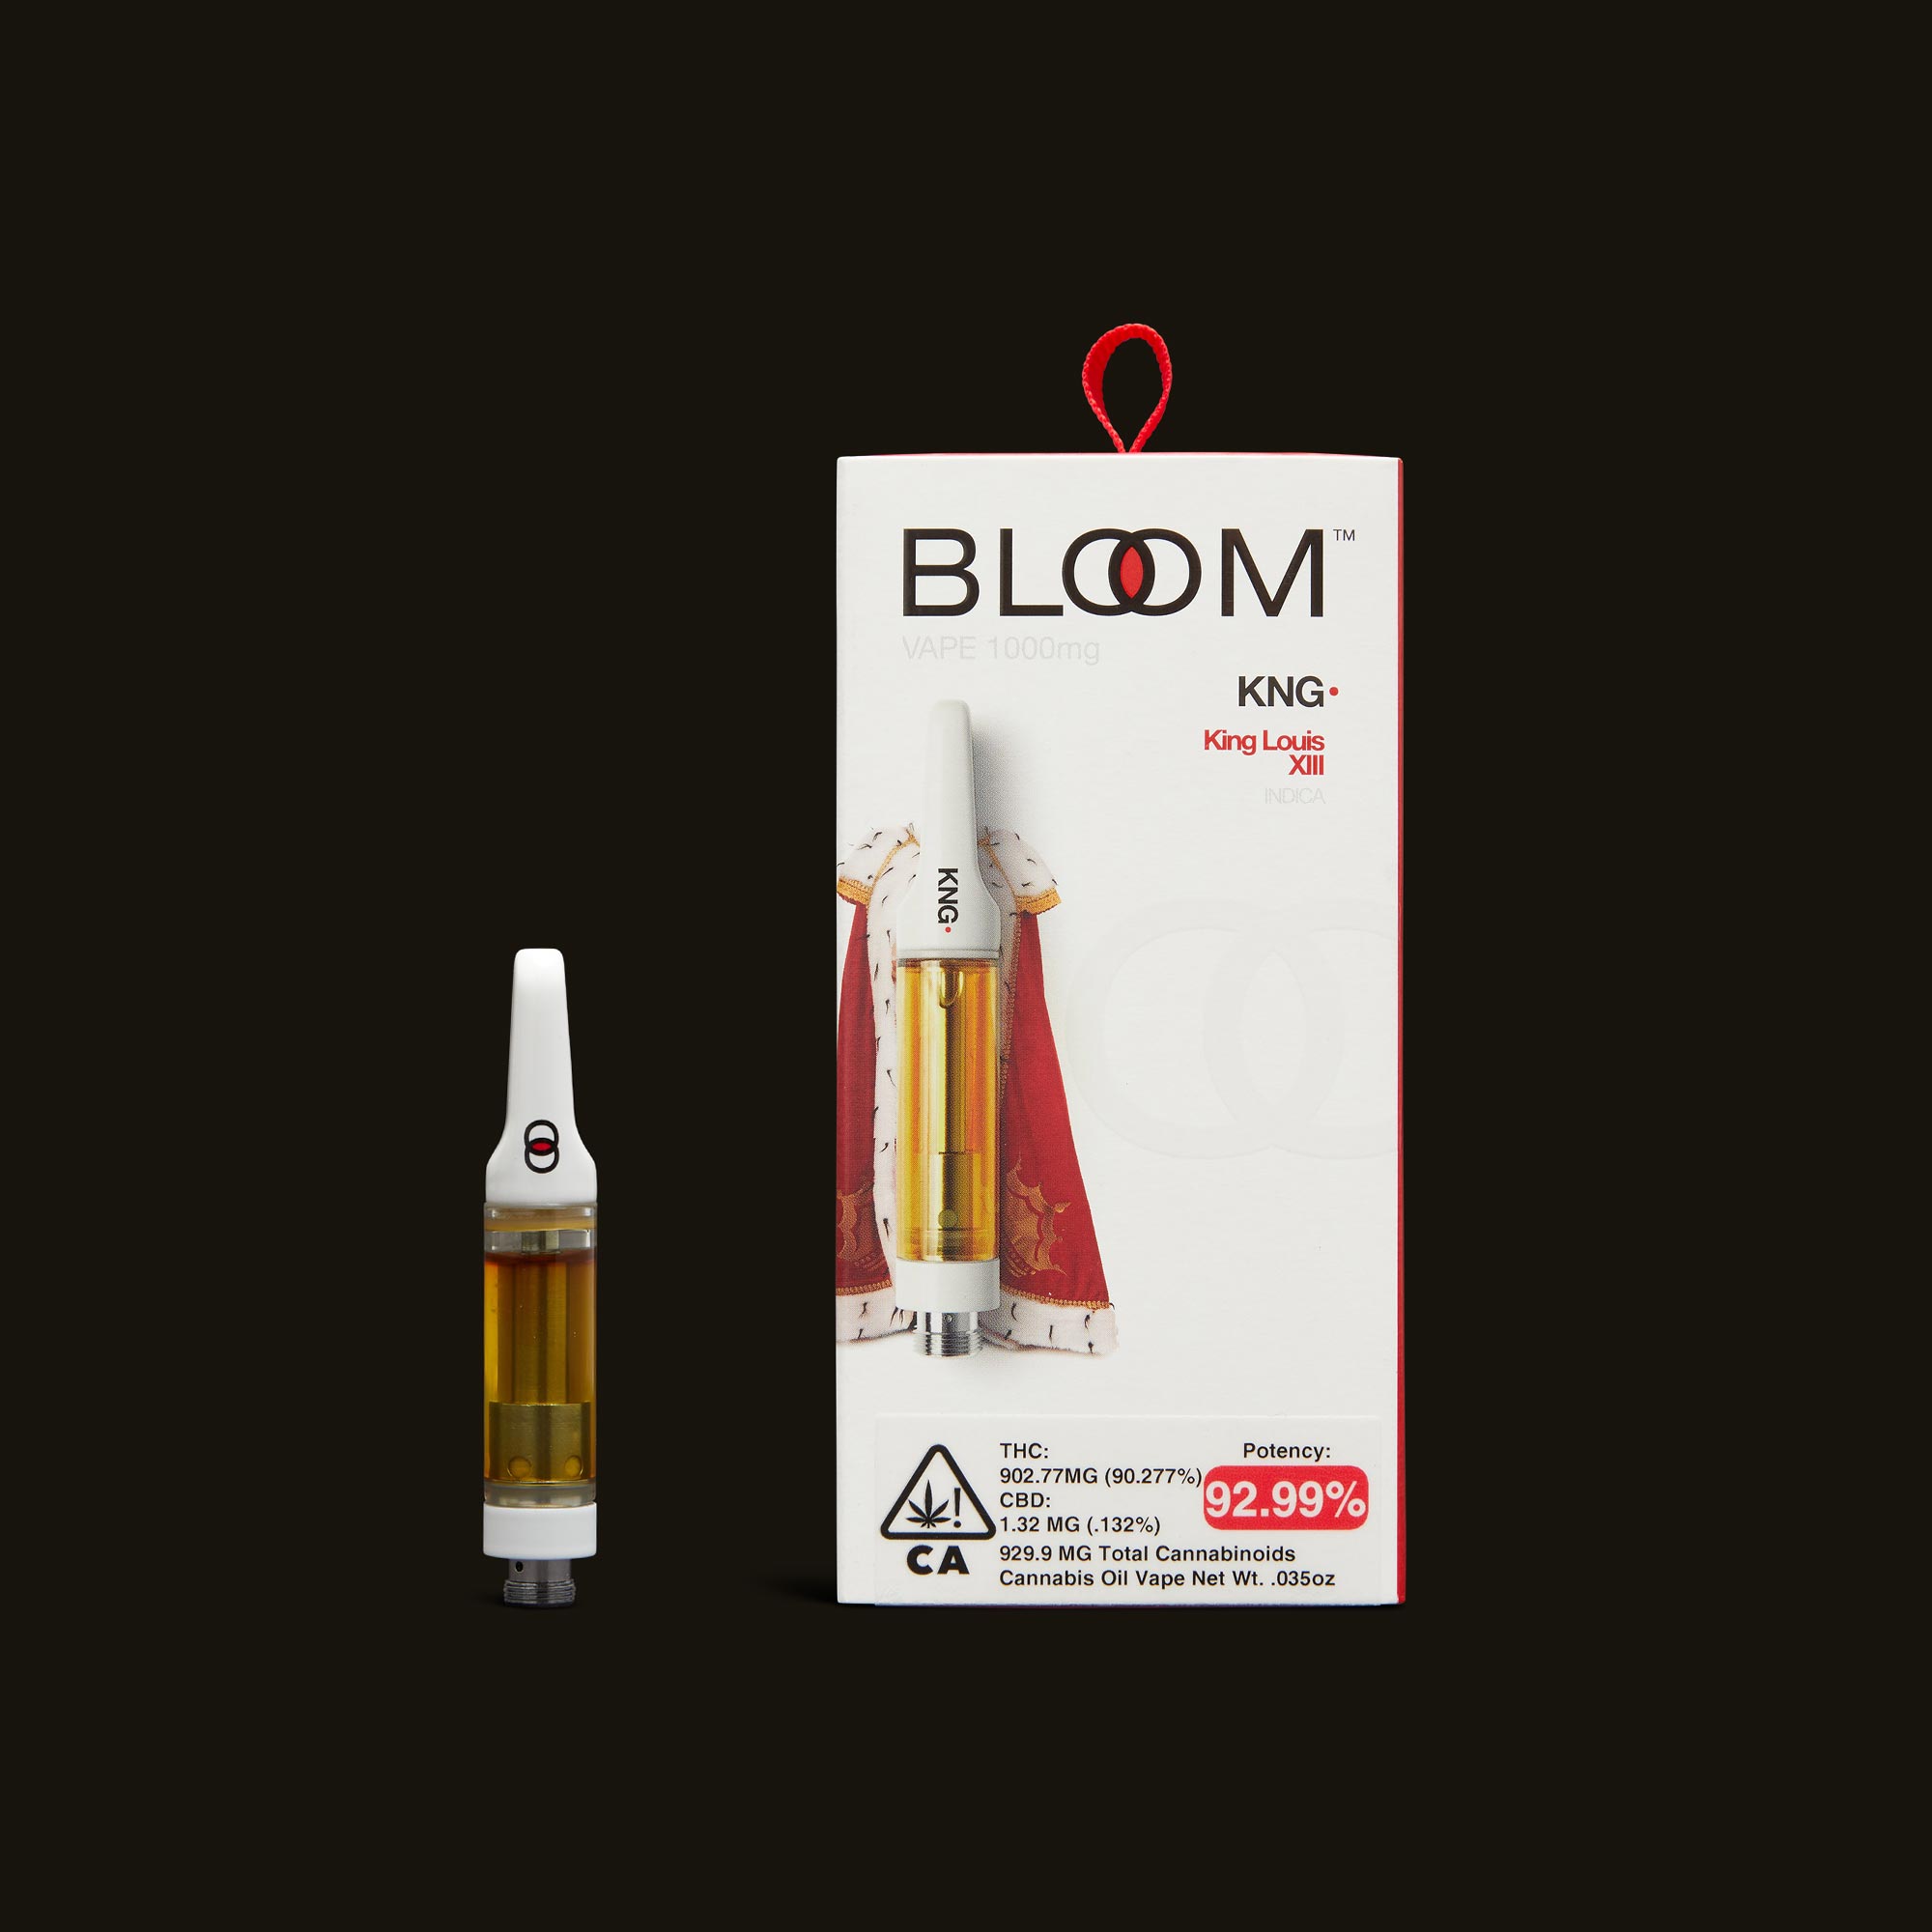 Bloom-King-Louis-XIII-Cartridge-1g3711-1-2264130.jpg